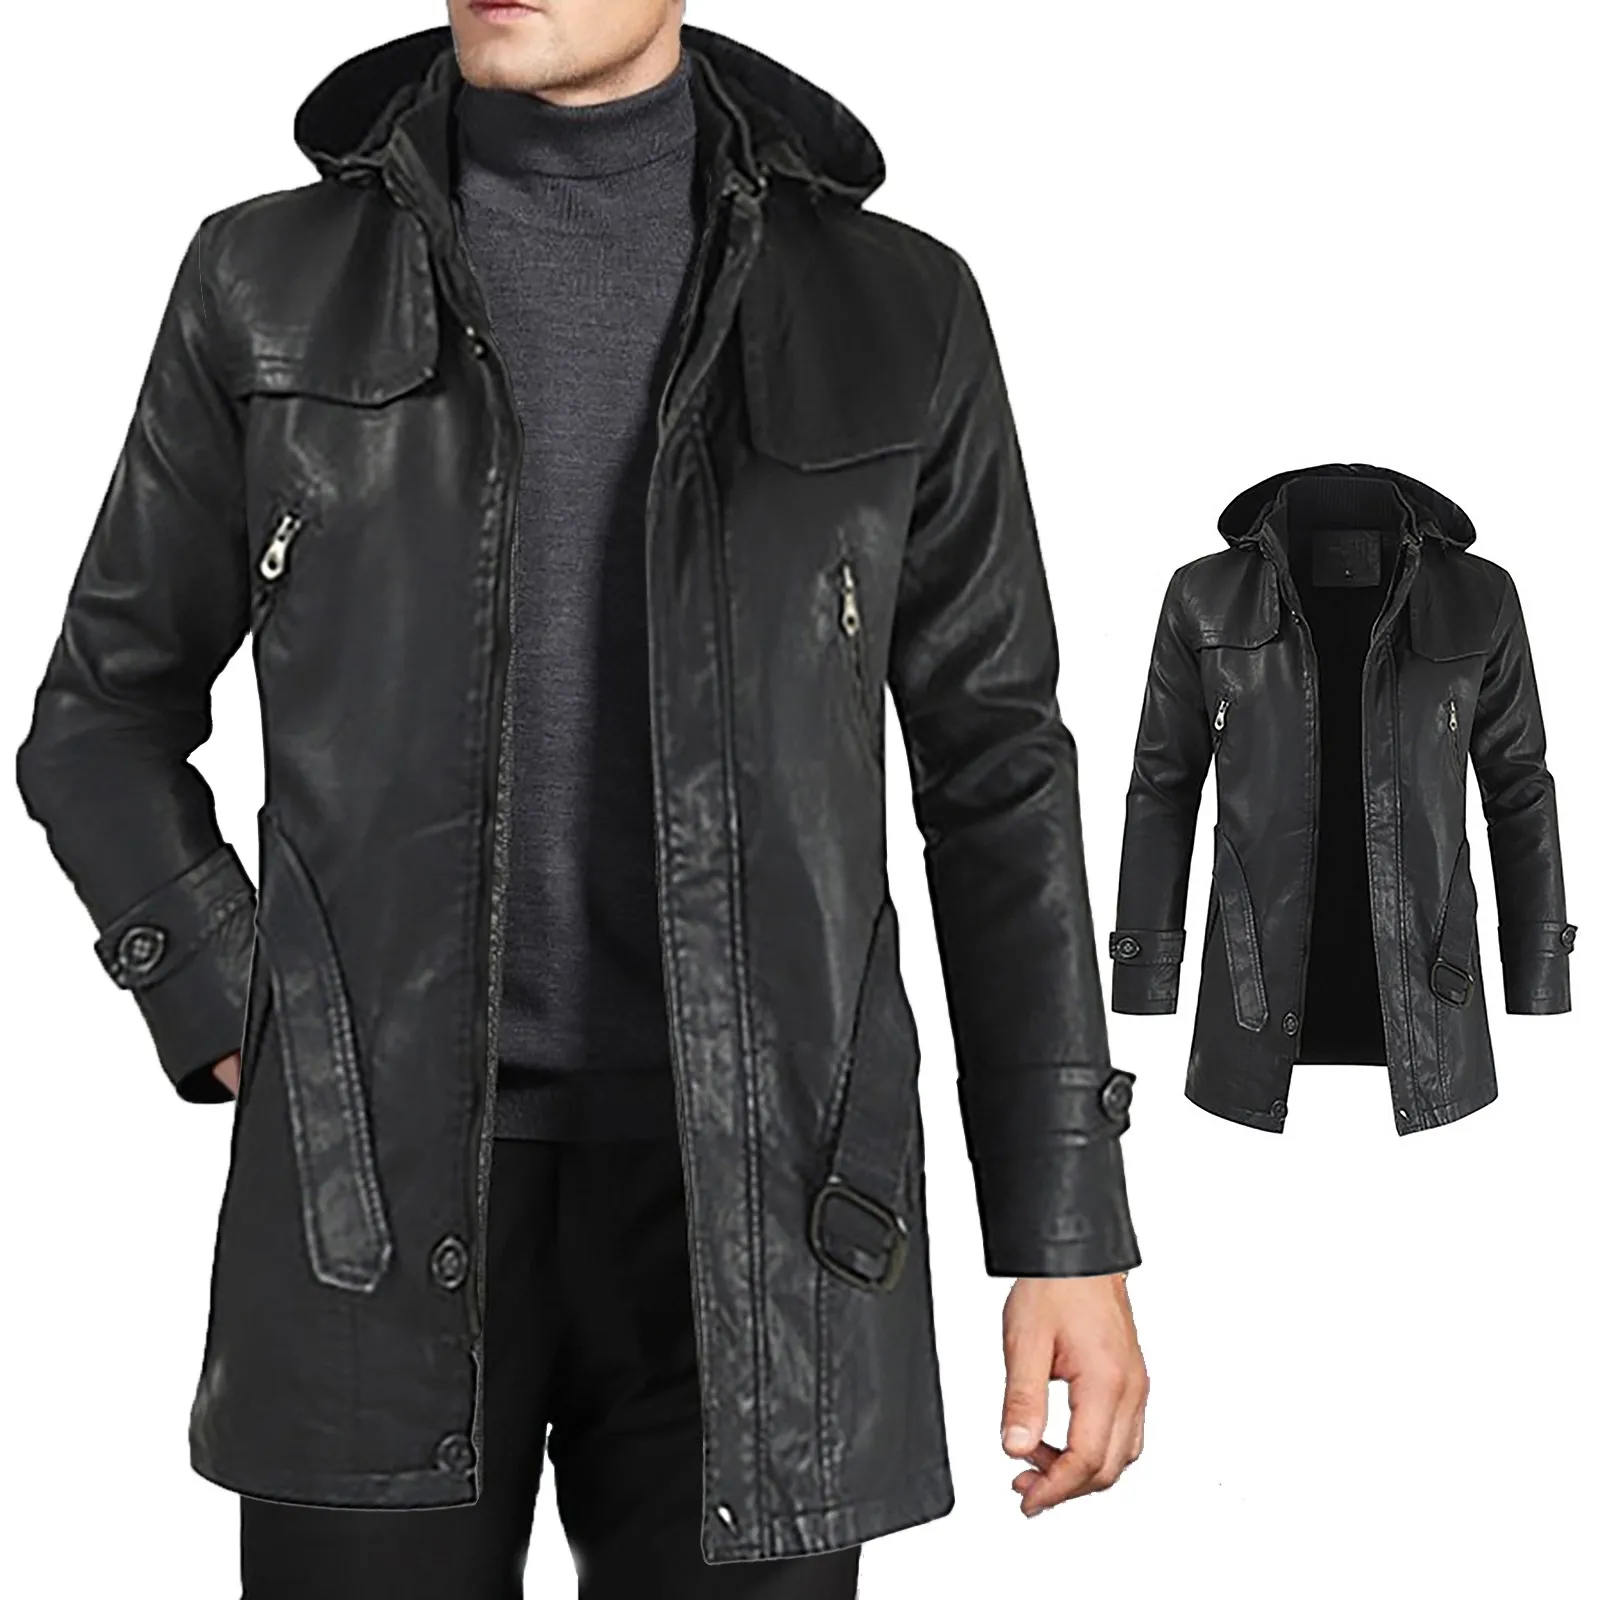 

Куртка мужская джинсовая на молнии, повседневная кожаная верхняя одежда, легкий пуховик, с длинным рукавом, на зиму